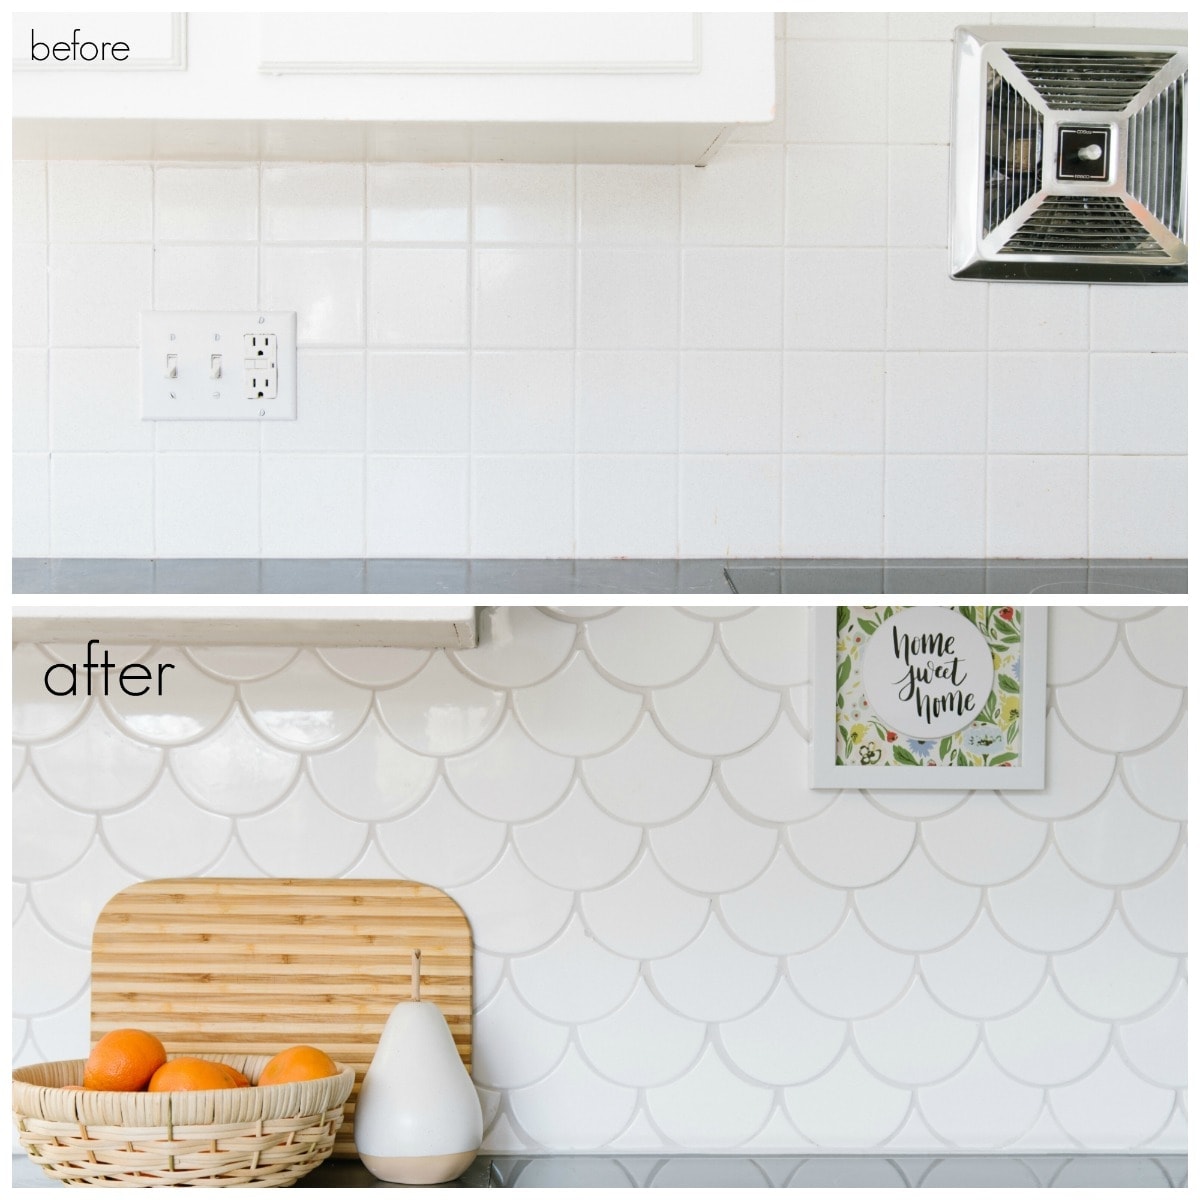 backsplash tile comparison of before and after